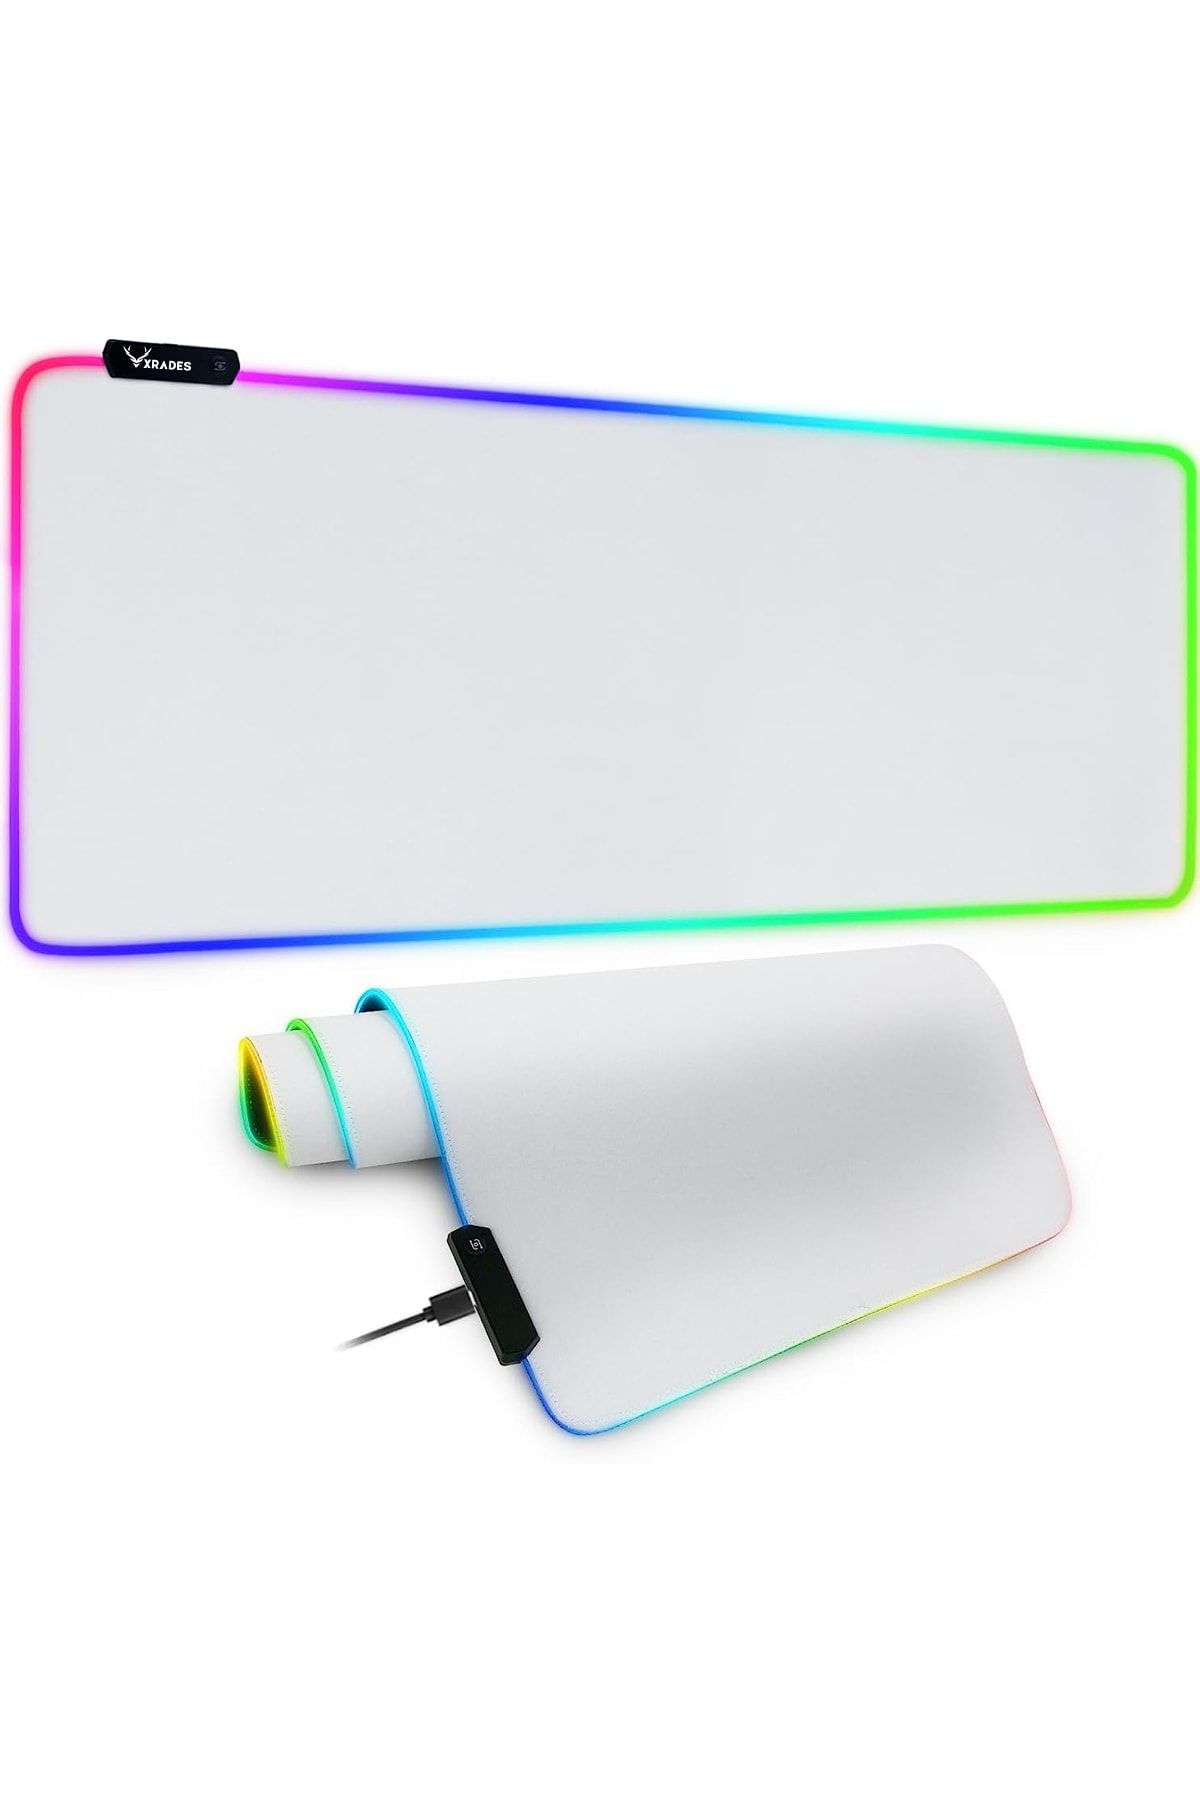 Xrades Beyaz RGB Mousepad 80x30 cm 13 farklı renk modu Su geçirmez oyuncu gaming XL mausepad